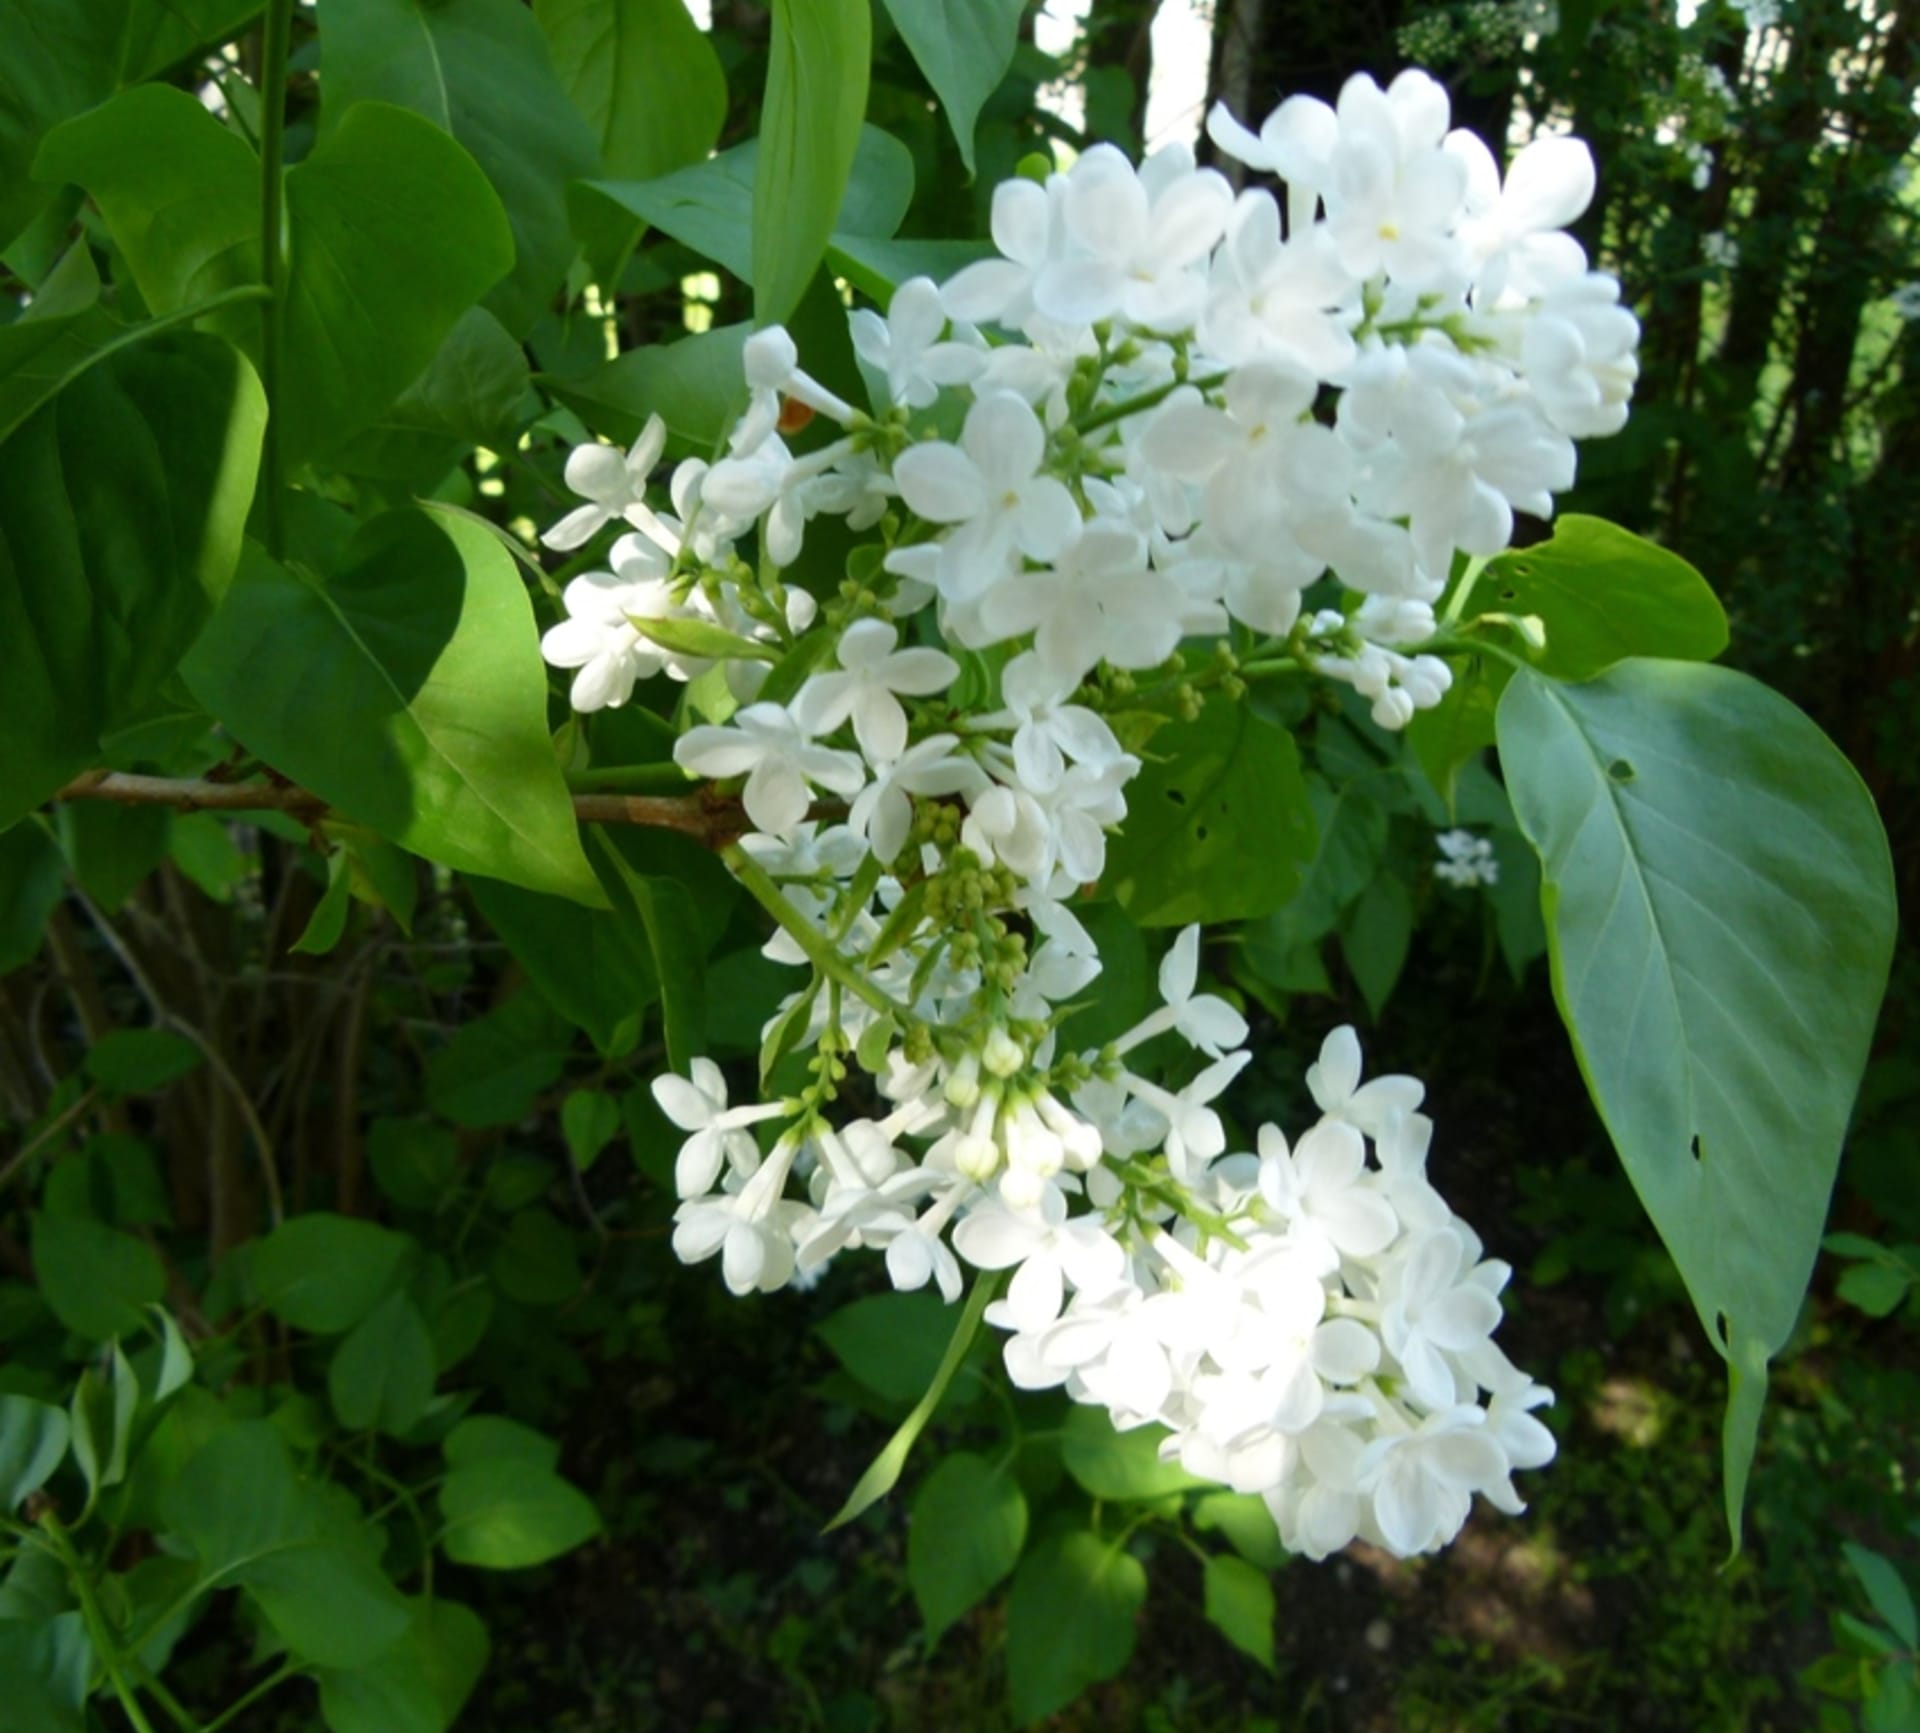 Podmanivě voňavé květy šeříku se objevují od dubna až do června a rozkvétají postupně. Nejintenzivněji voní podvečer, od toho název šeřík, protože se šeří neboli stmívá.